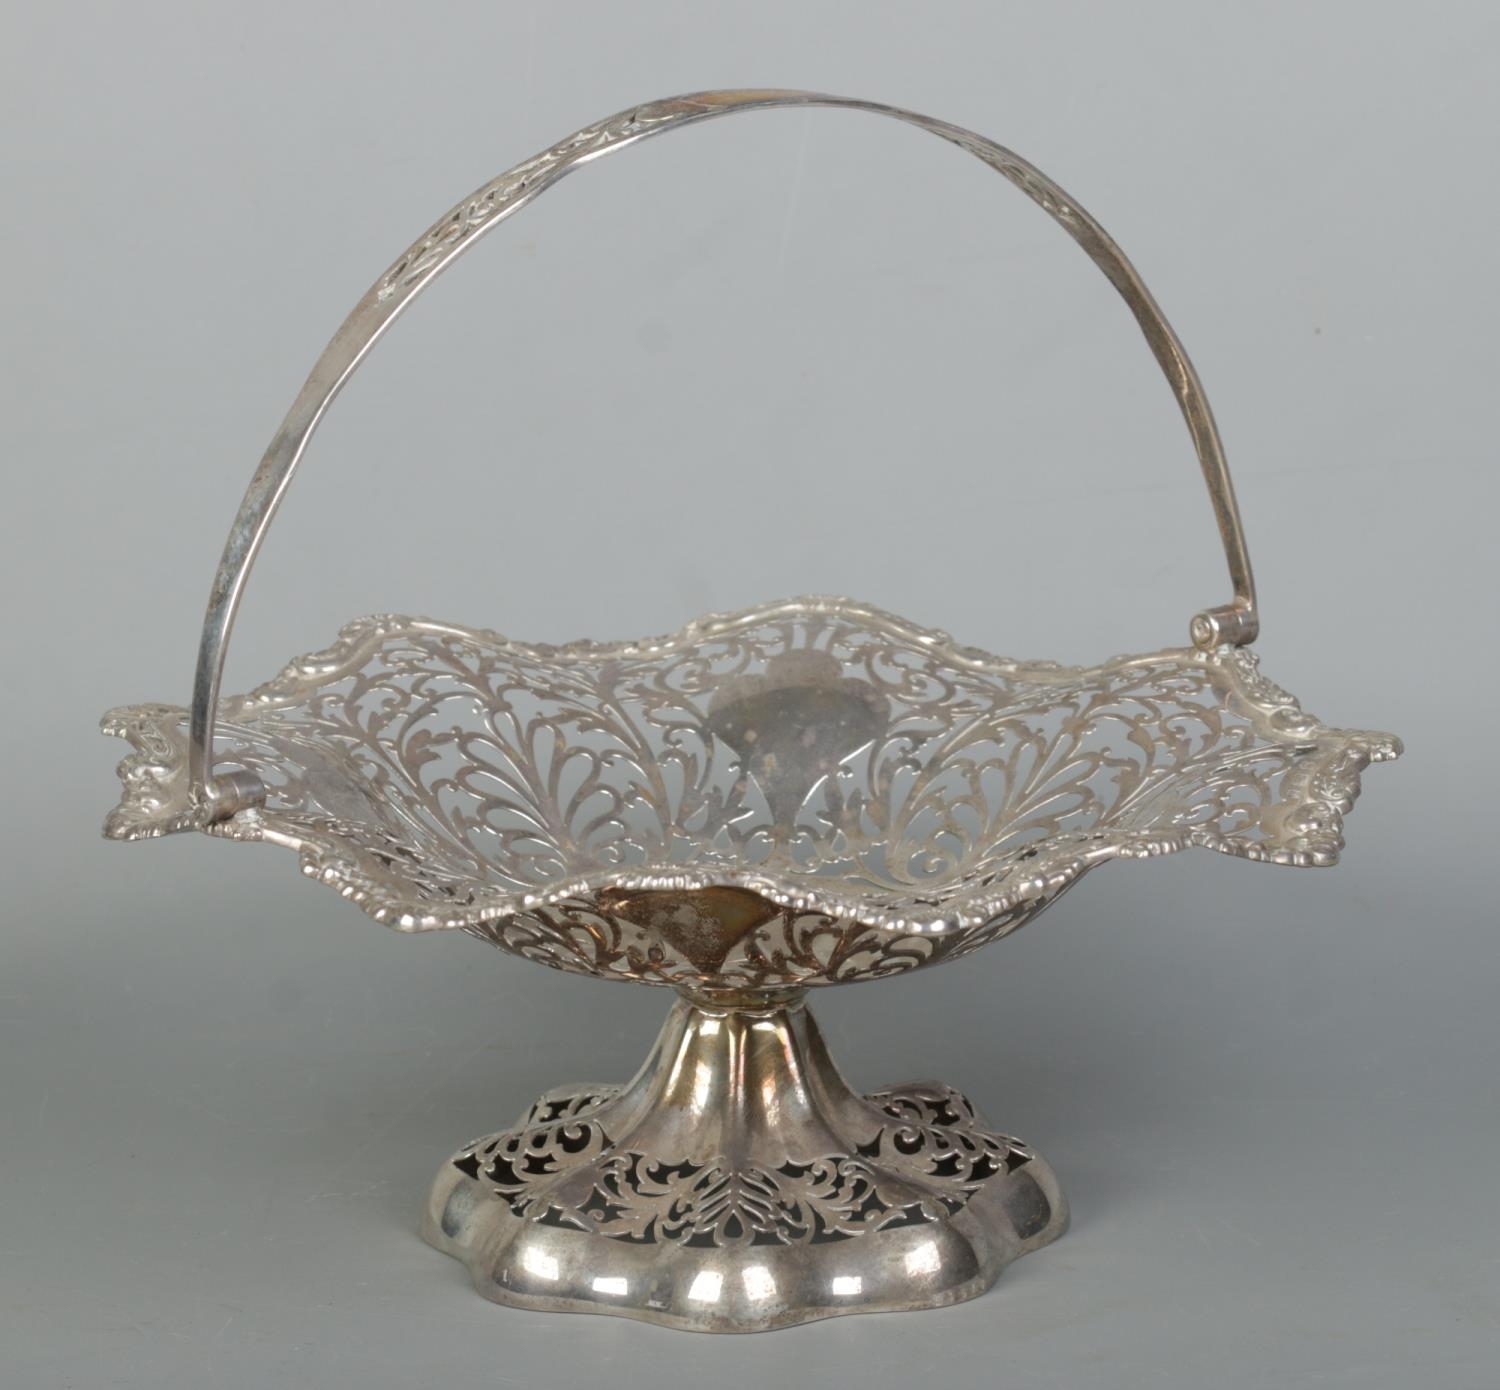 An Edwardian pierced silver basket with swing handle. Assayed Birmingham 1905 by Elkington & Co.